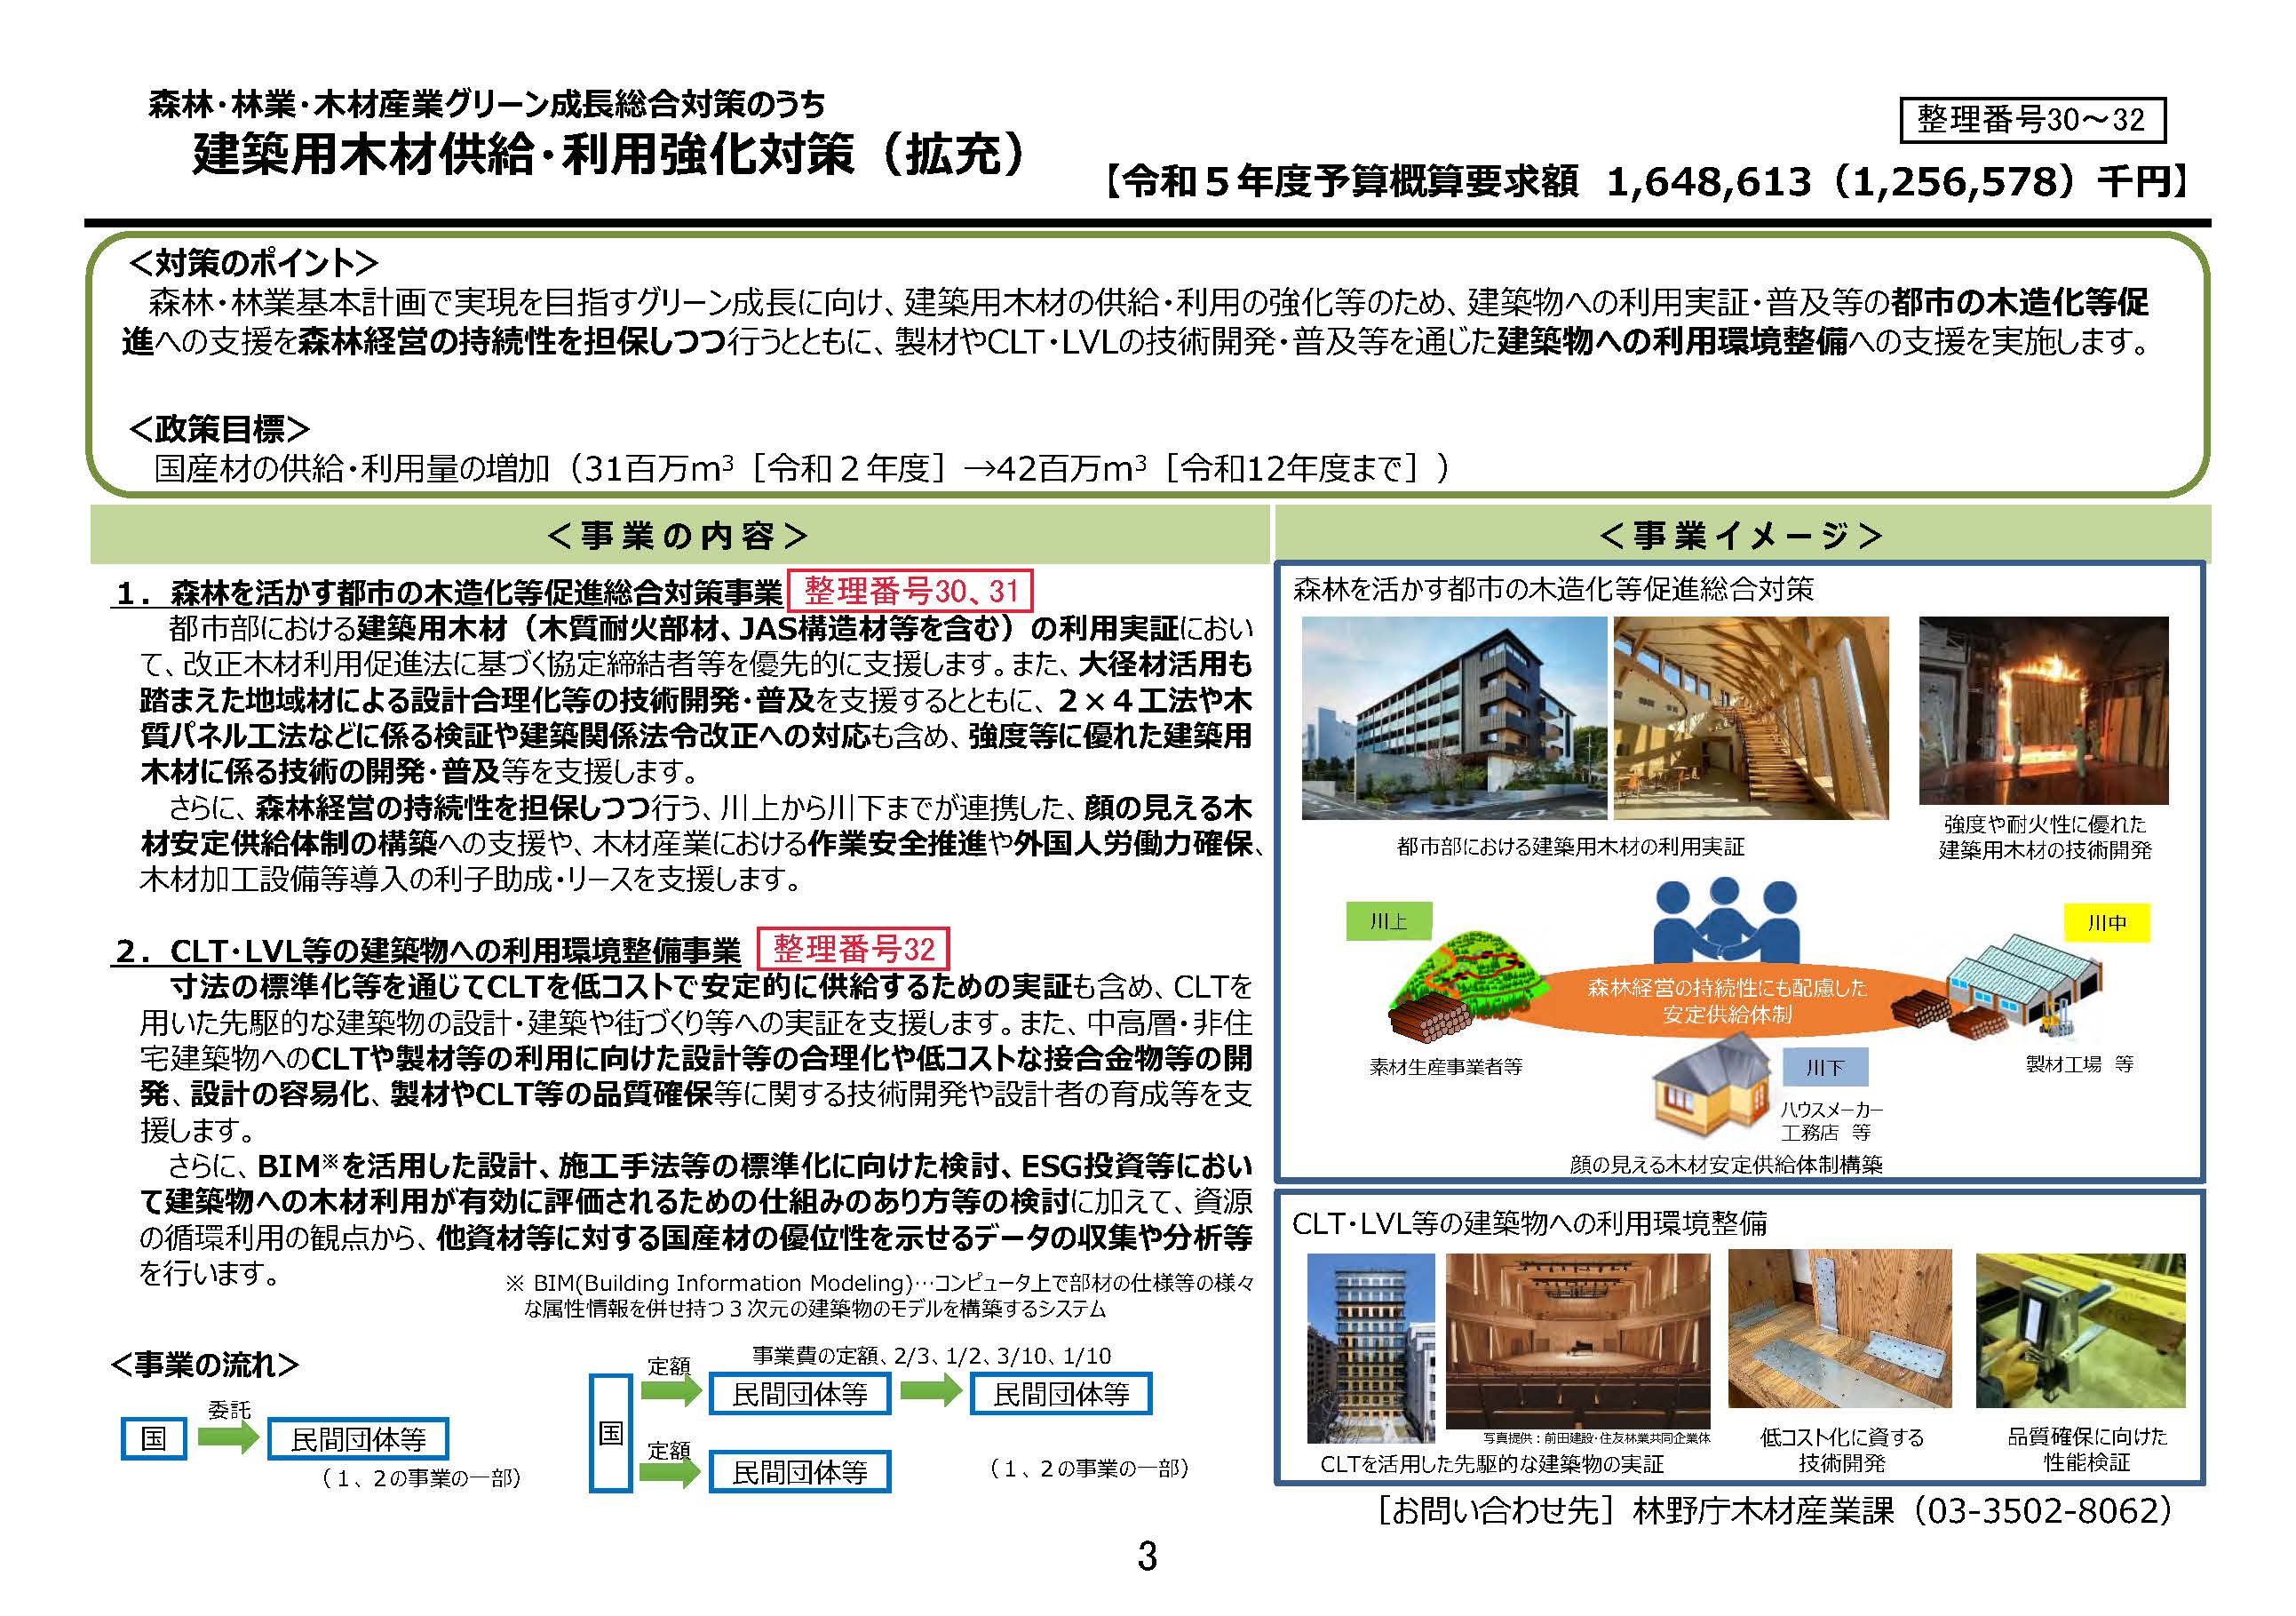 非住宅建築物の木造化・木質化に活用可能な補助事業・制度等一覧(令和5年度概算要求版)